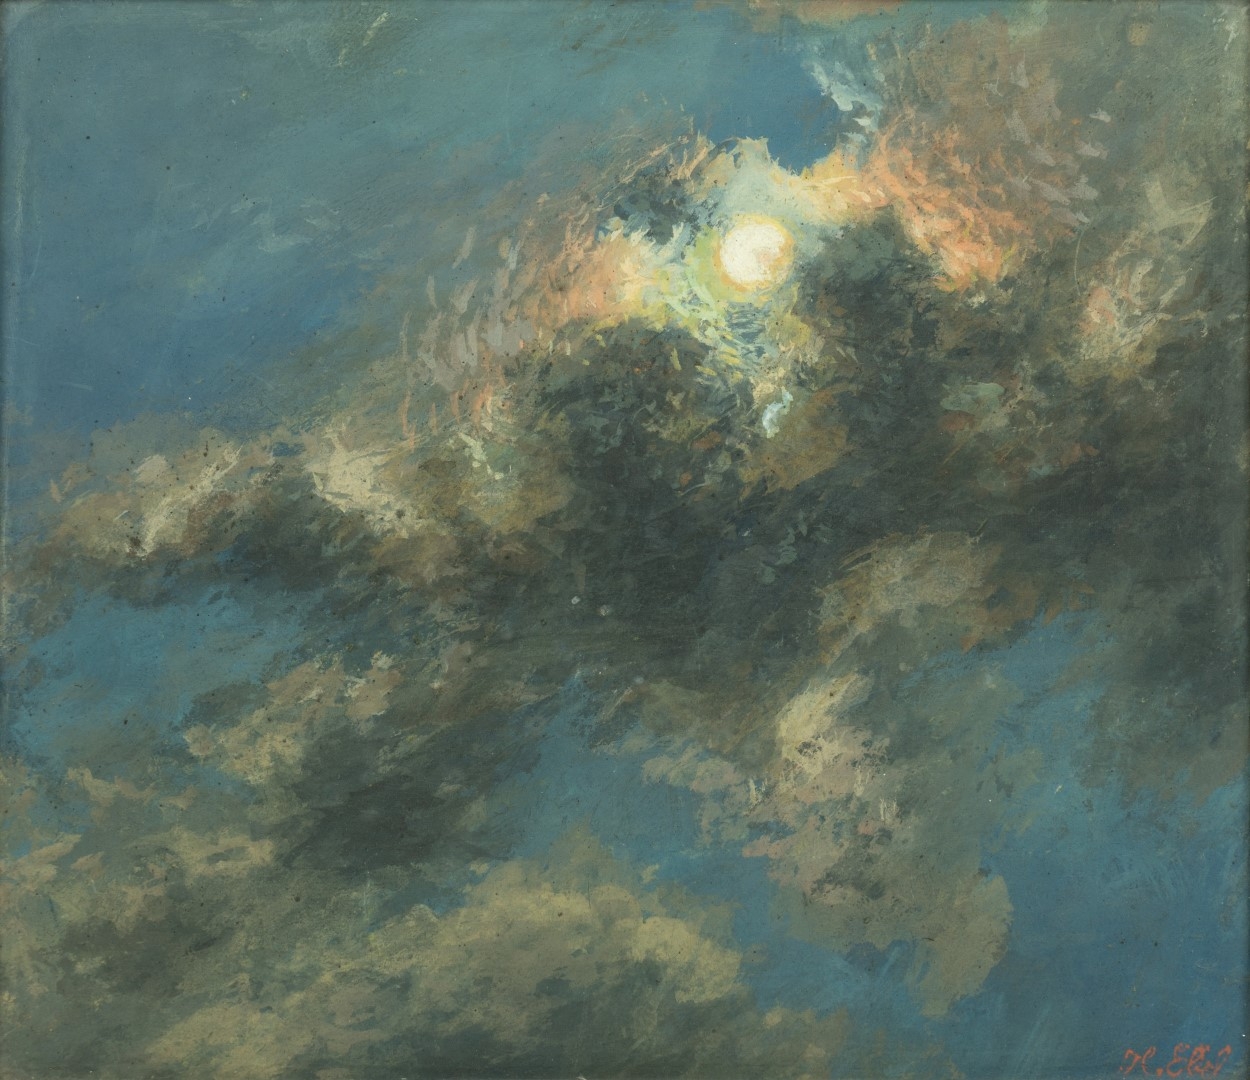 Lune et nuages à cache -cache, tempera sur carton, 26x30 cm, collection particulière.